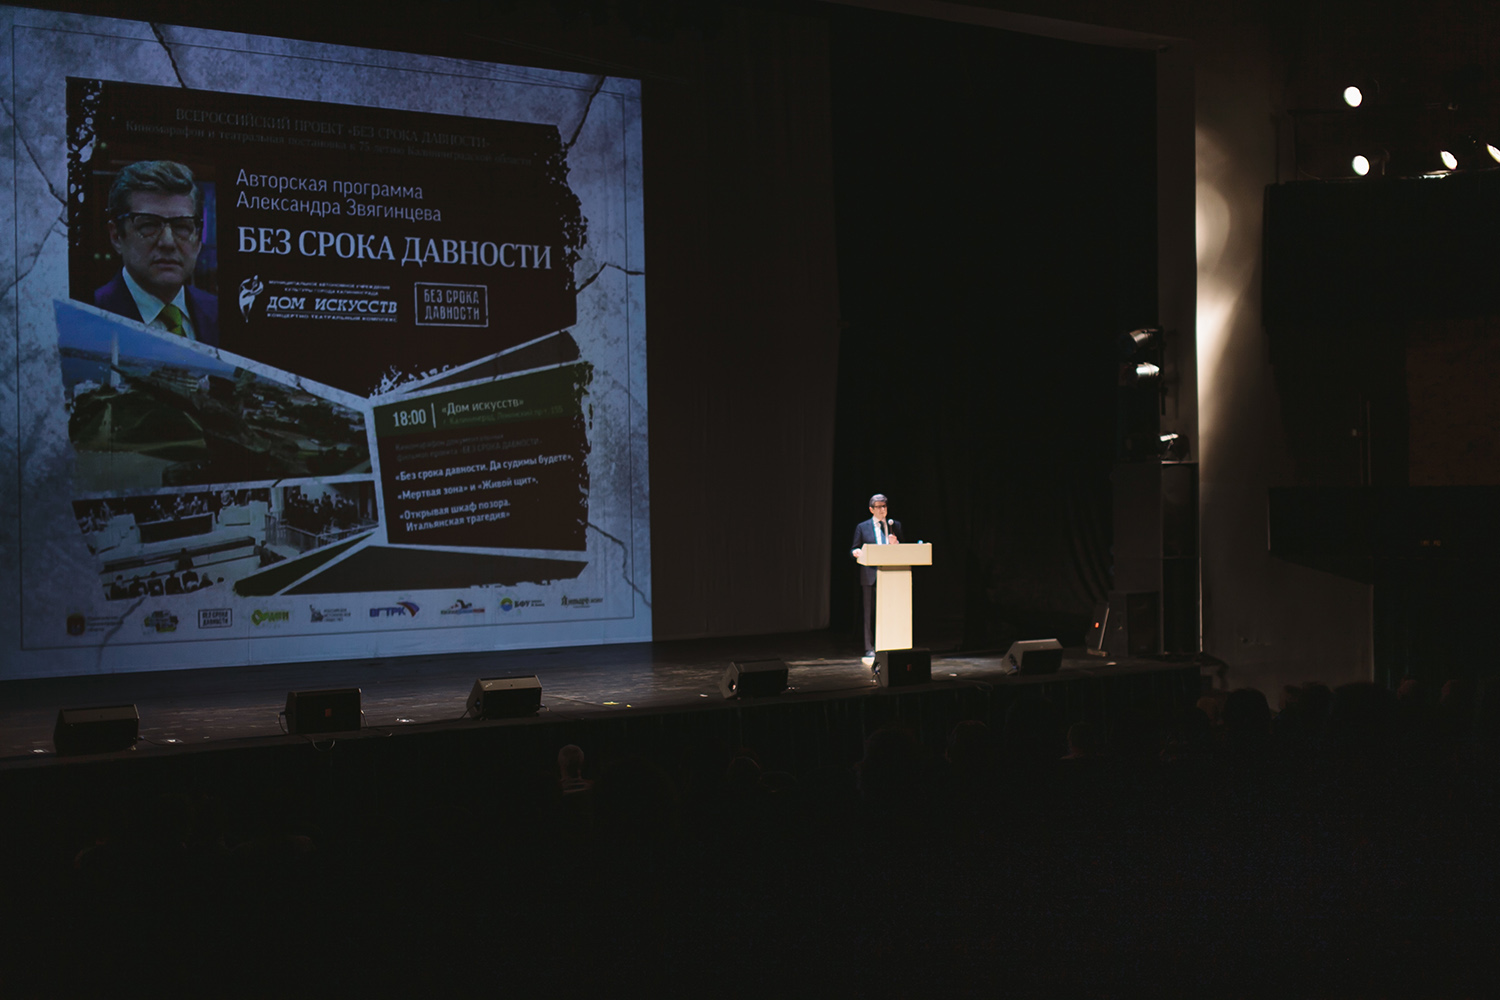 Сценарист Александр Звягинцев презентовал в Калининграде свои фильмы о Второй Мировой войне